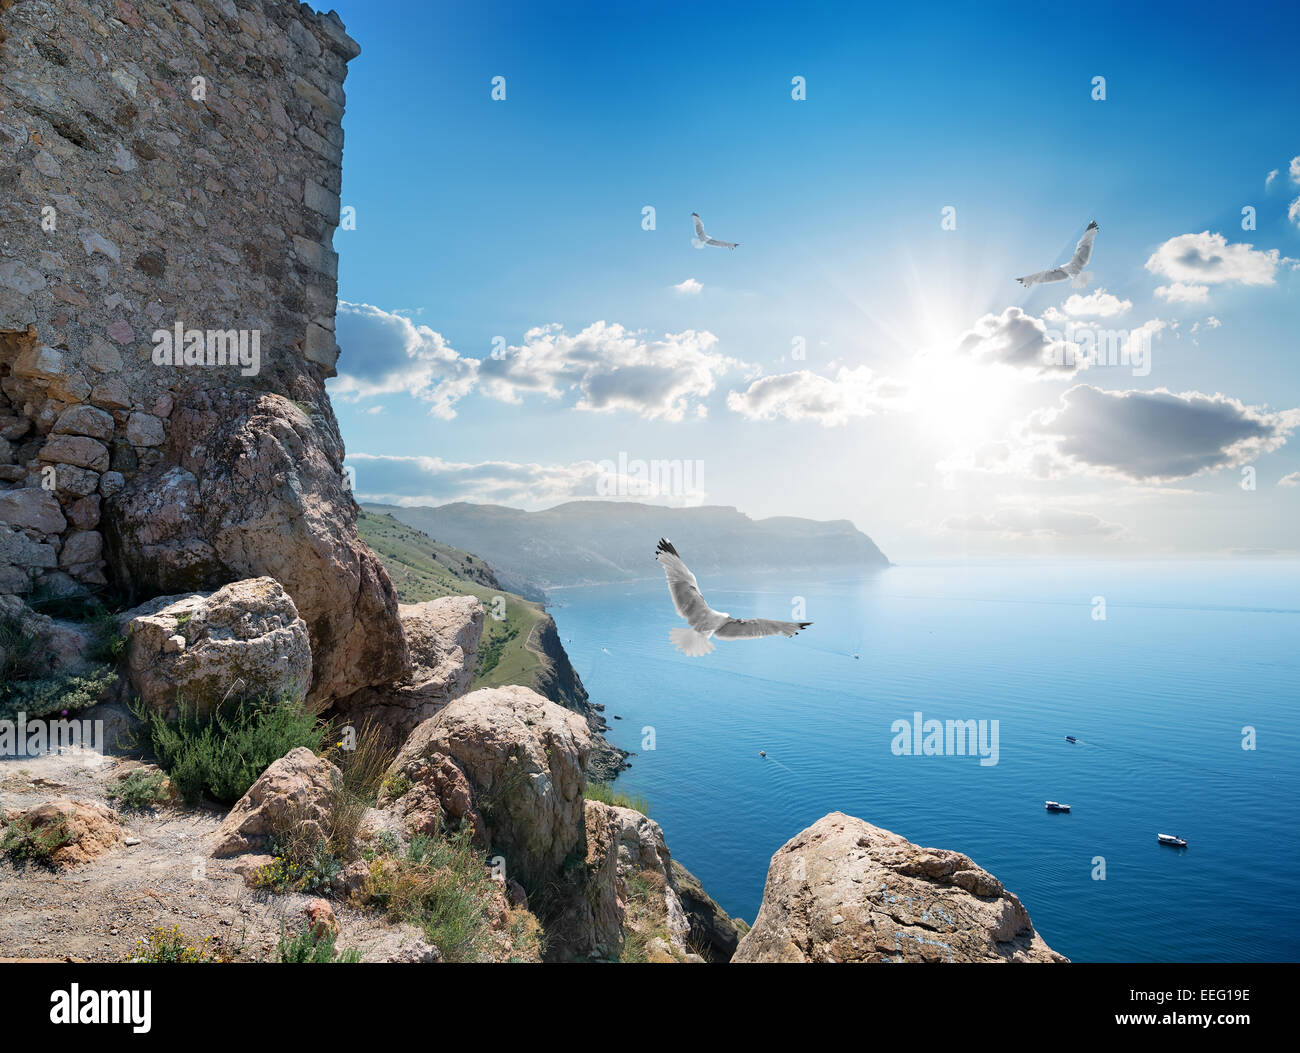 Festung in der Nähe von Meer in schöner sonniger Tag Stockfoto